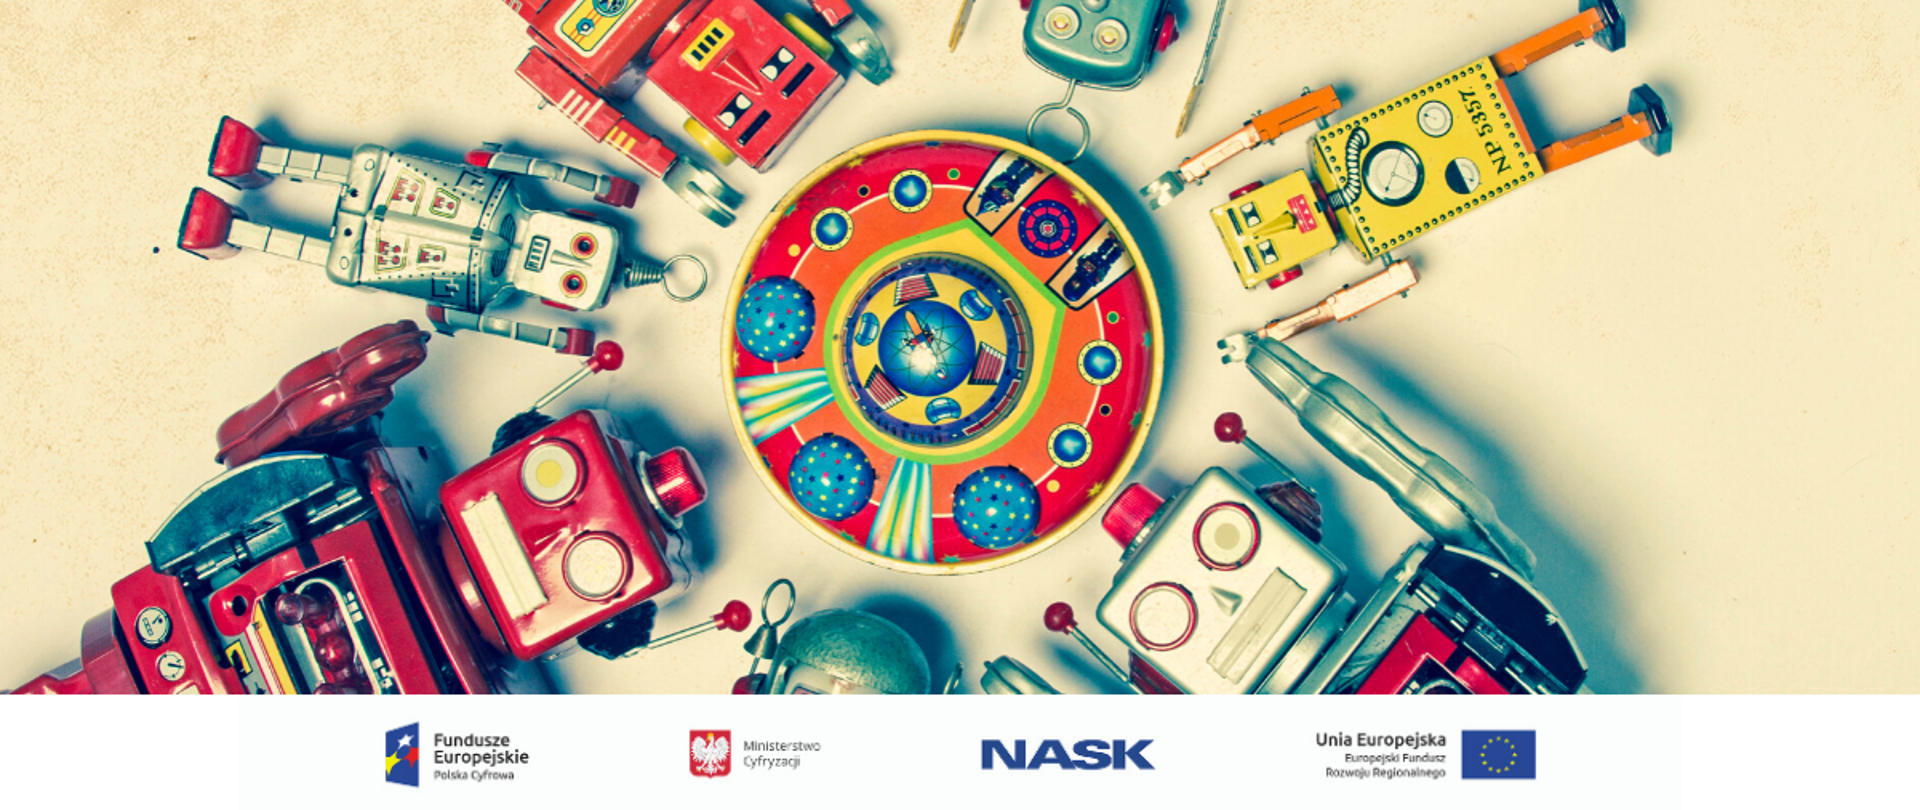 Na zdjęciu widać kilka różnych zabawek-robotów z rękami uniesionymi do góry, ułożone koncentrycznie na płaskiej powierzchni. U dołu znajduje się pasek logotypów: Europejskie Fundusze Polska Cyfrowa, Ministerstwo Cyfryzacji, NASK i Unia Europejska Europejski Fundusz Rozwoju Regionalnego.